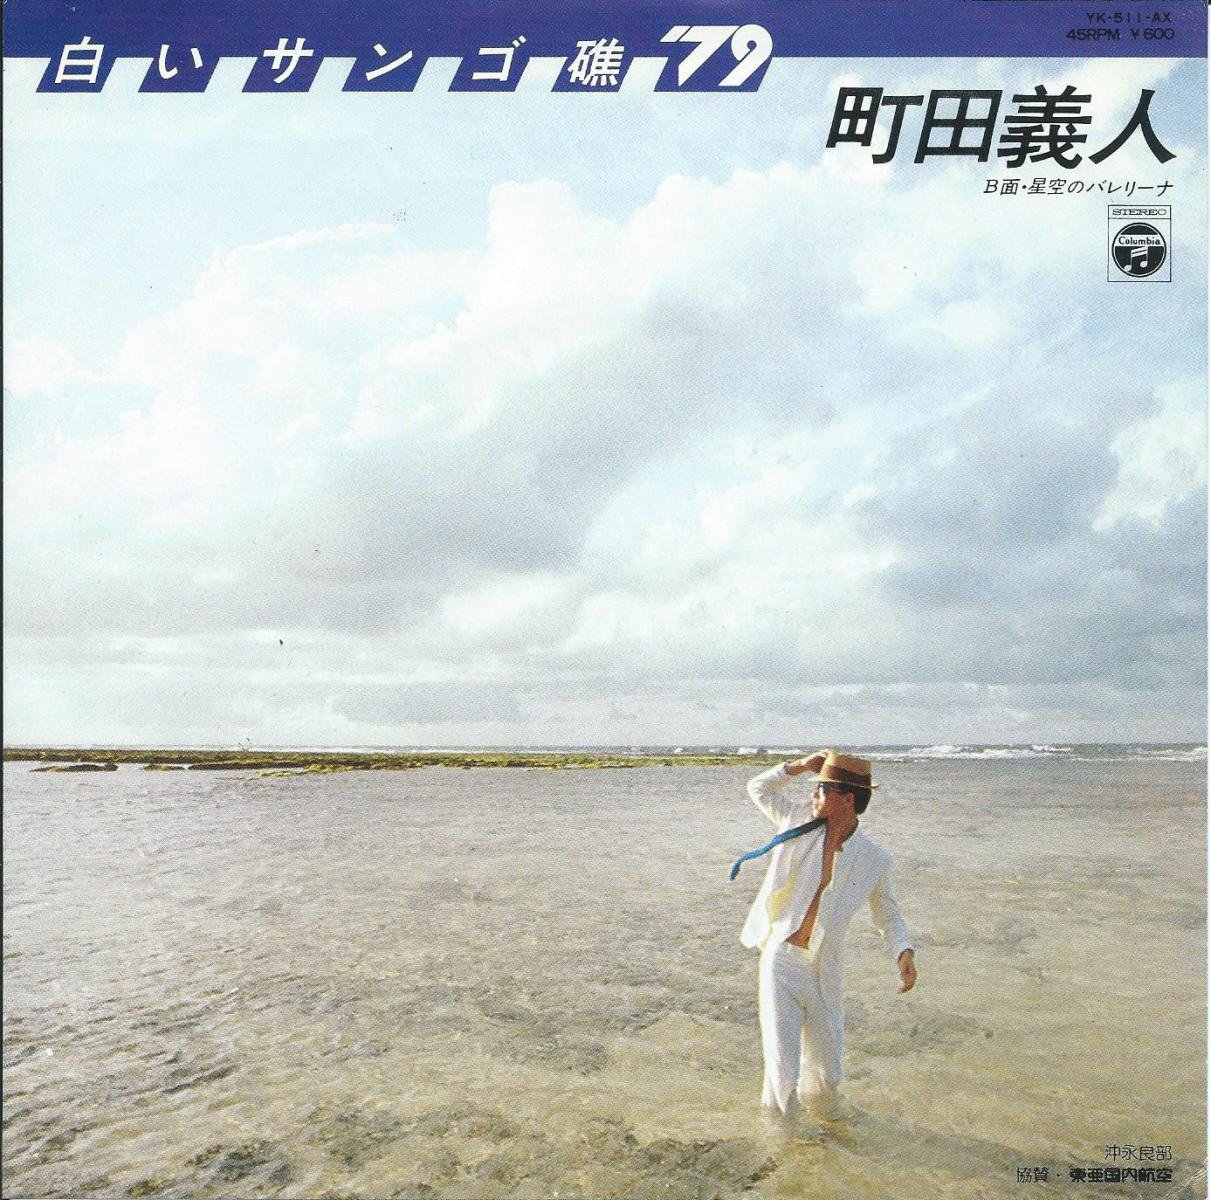 町田義人 YOSHITO MACHIDA / 白いサンゴ礁 '79 / 星空のバレリーナ (7